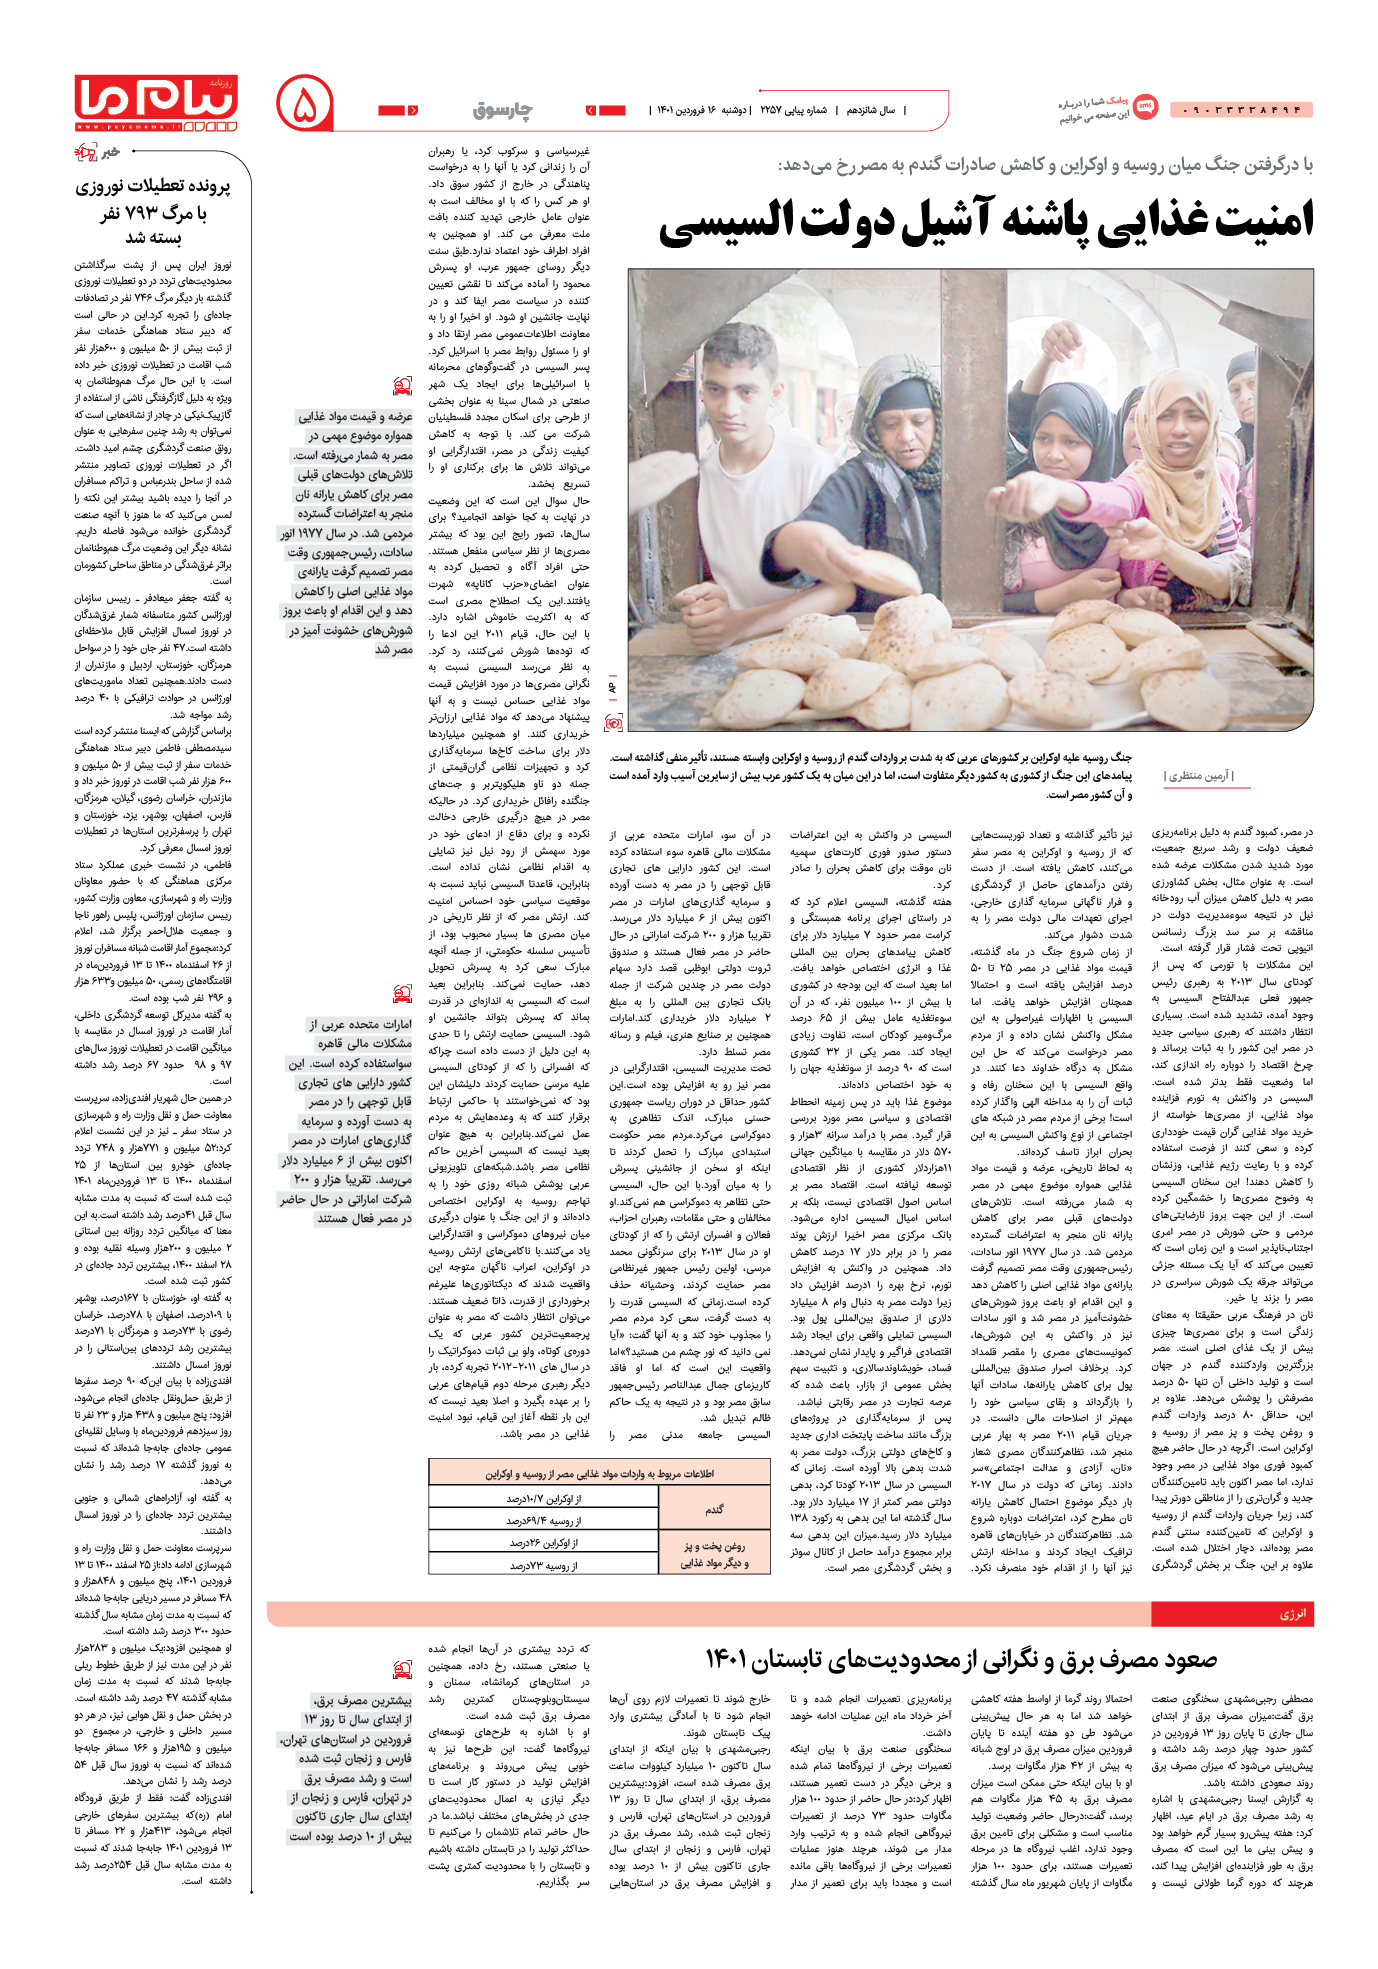 امنیت غذایی پاشنه آشیل دولت السیسی